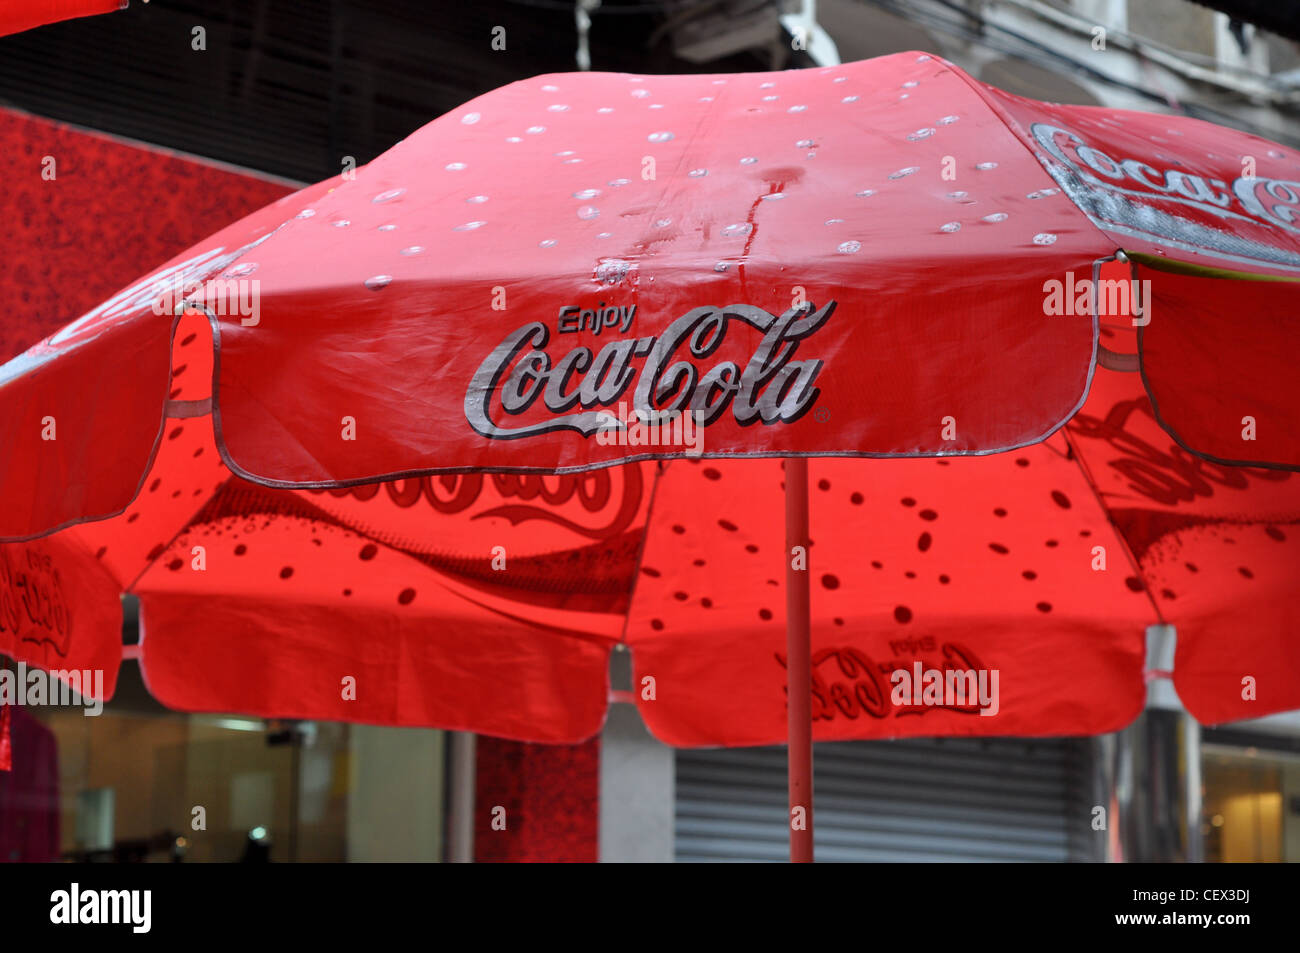 Coca cola umbrella immagini e fotografie stock ad alta risoluzione - Alamy